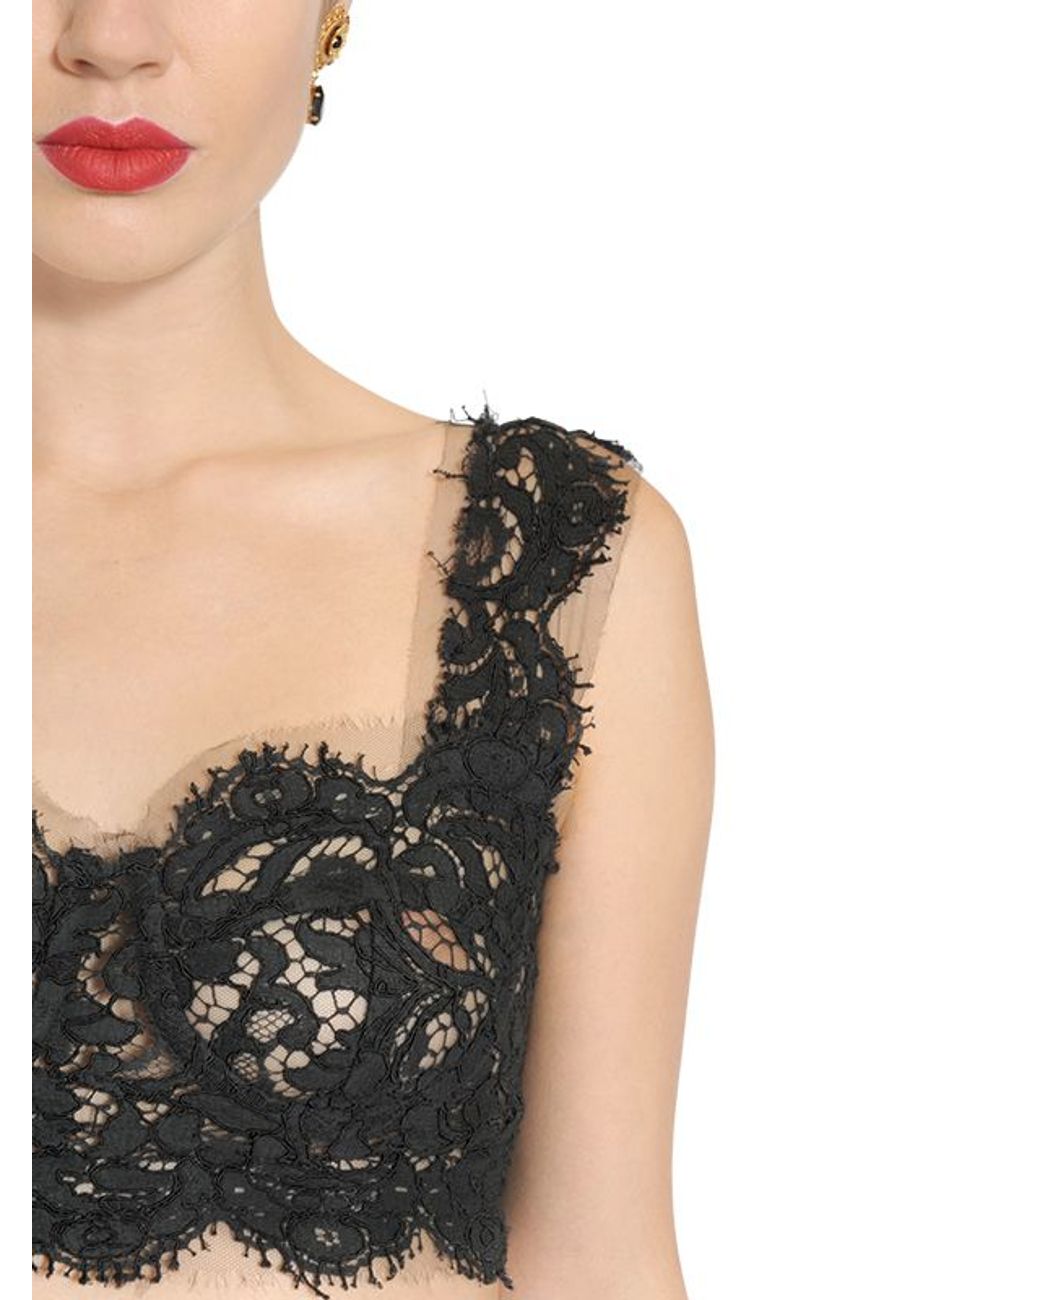 Lace-trimmed bra in black - Dolce Gabbana